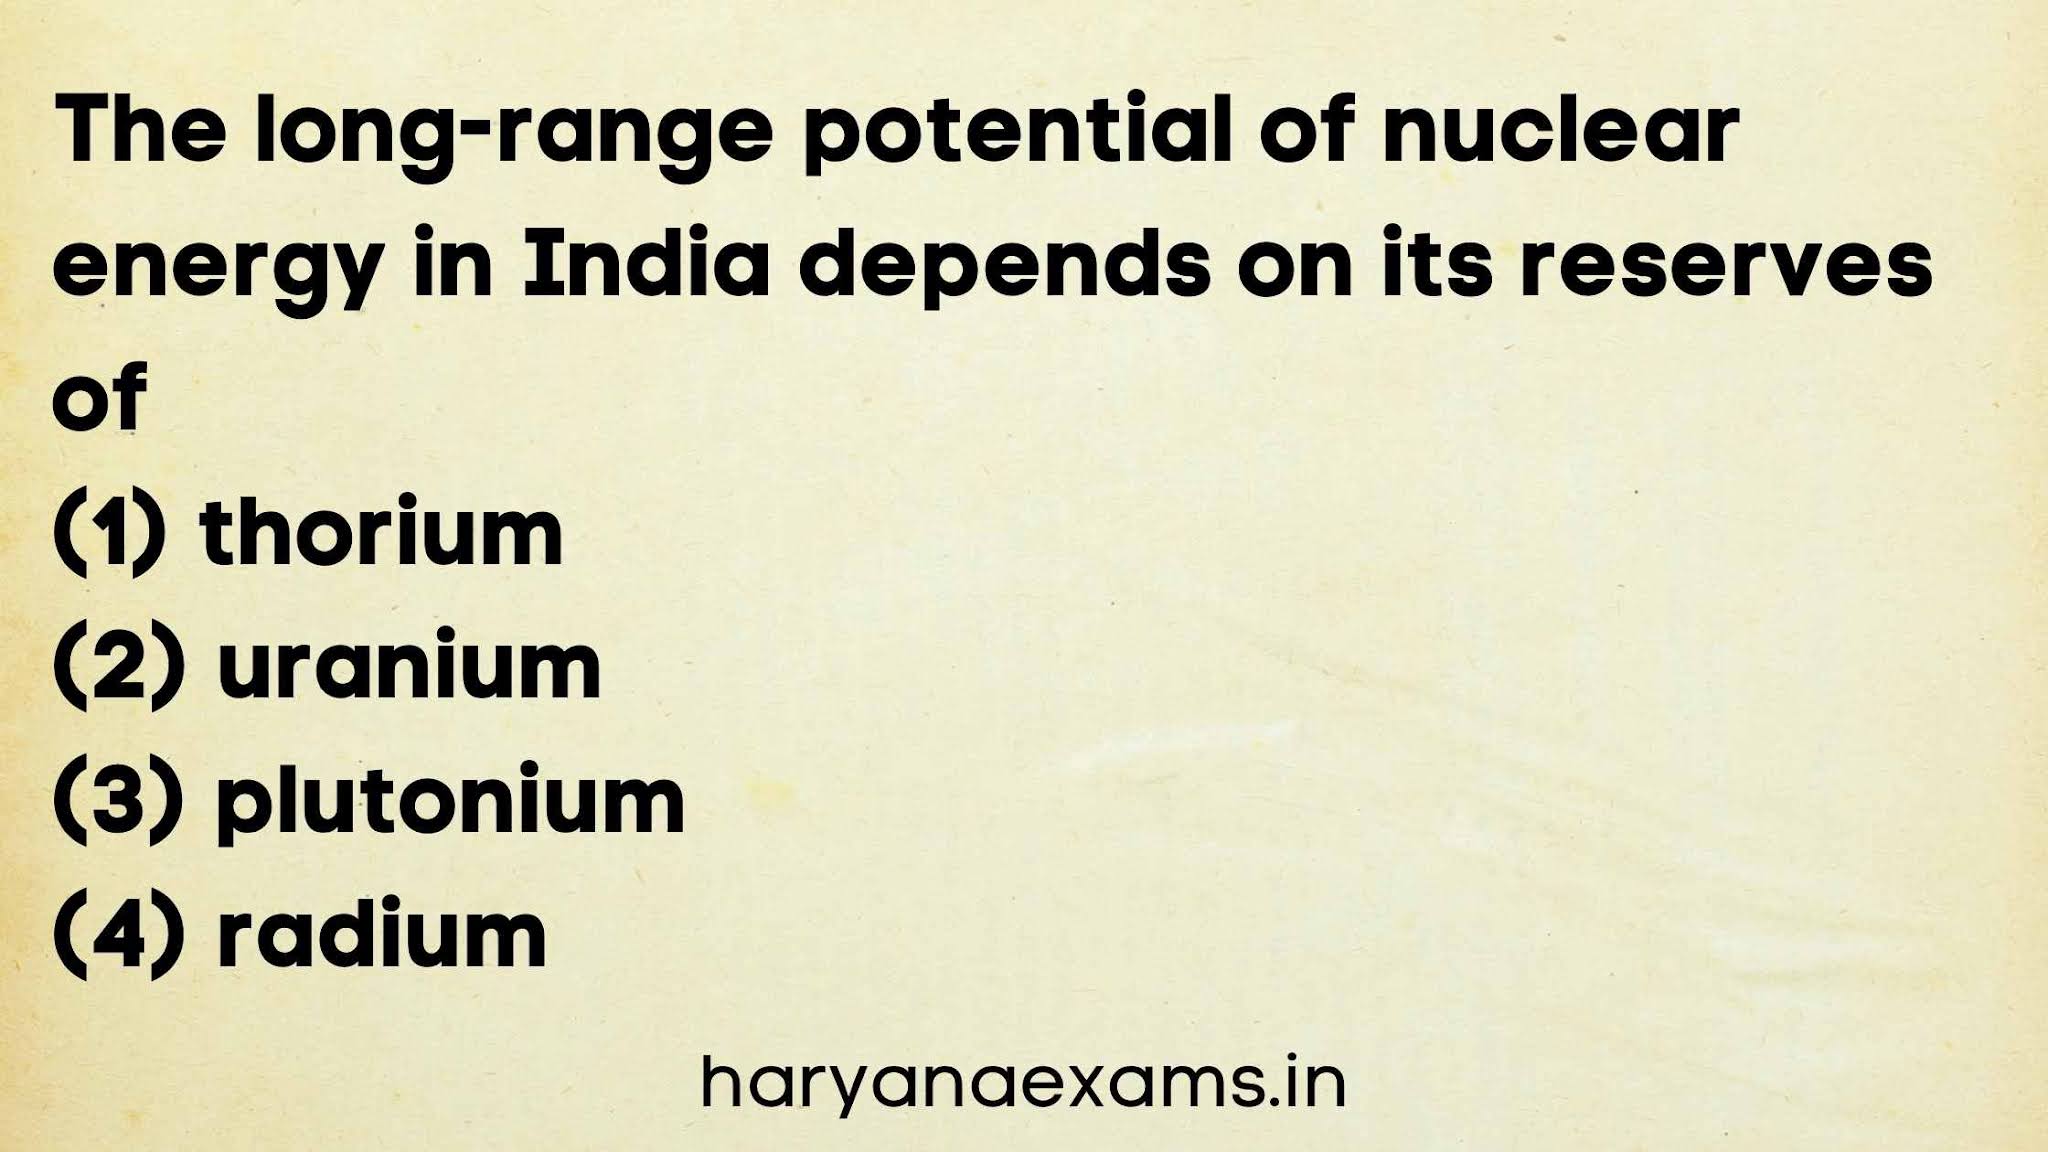 The long-range potential of nuclear energy in India depends on its reserves of   (1) thorium   (2) uranium   (3) plutonium   (4) radium